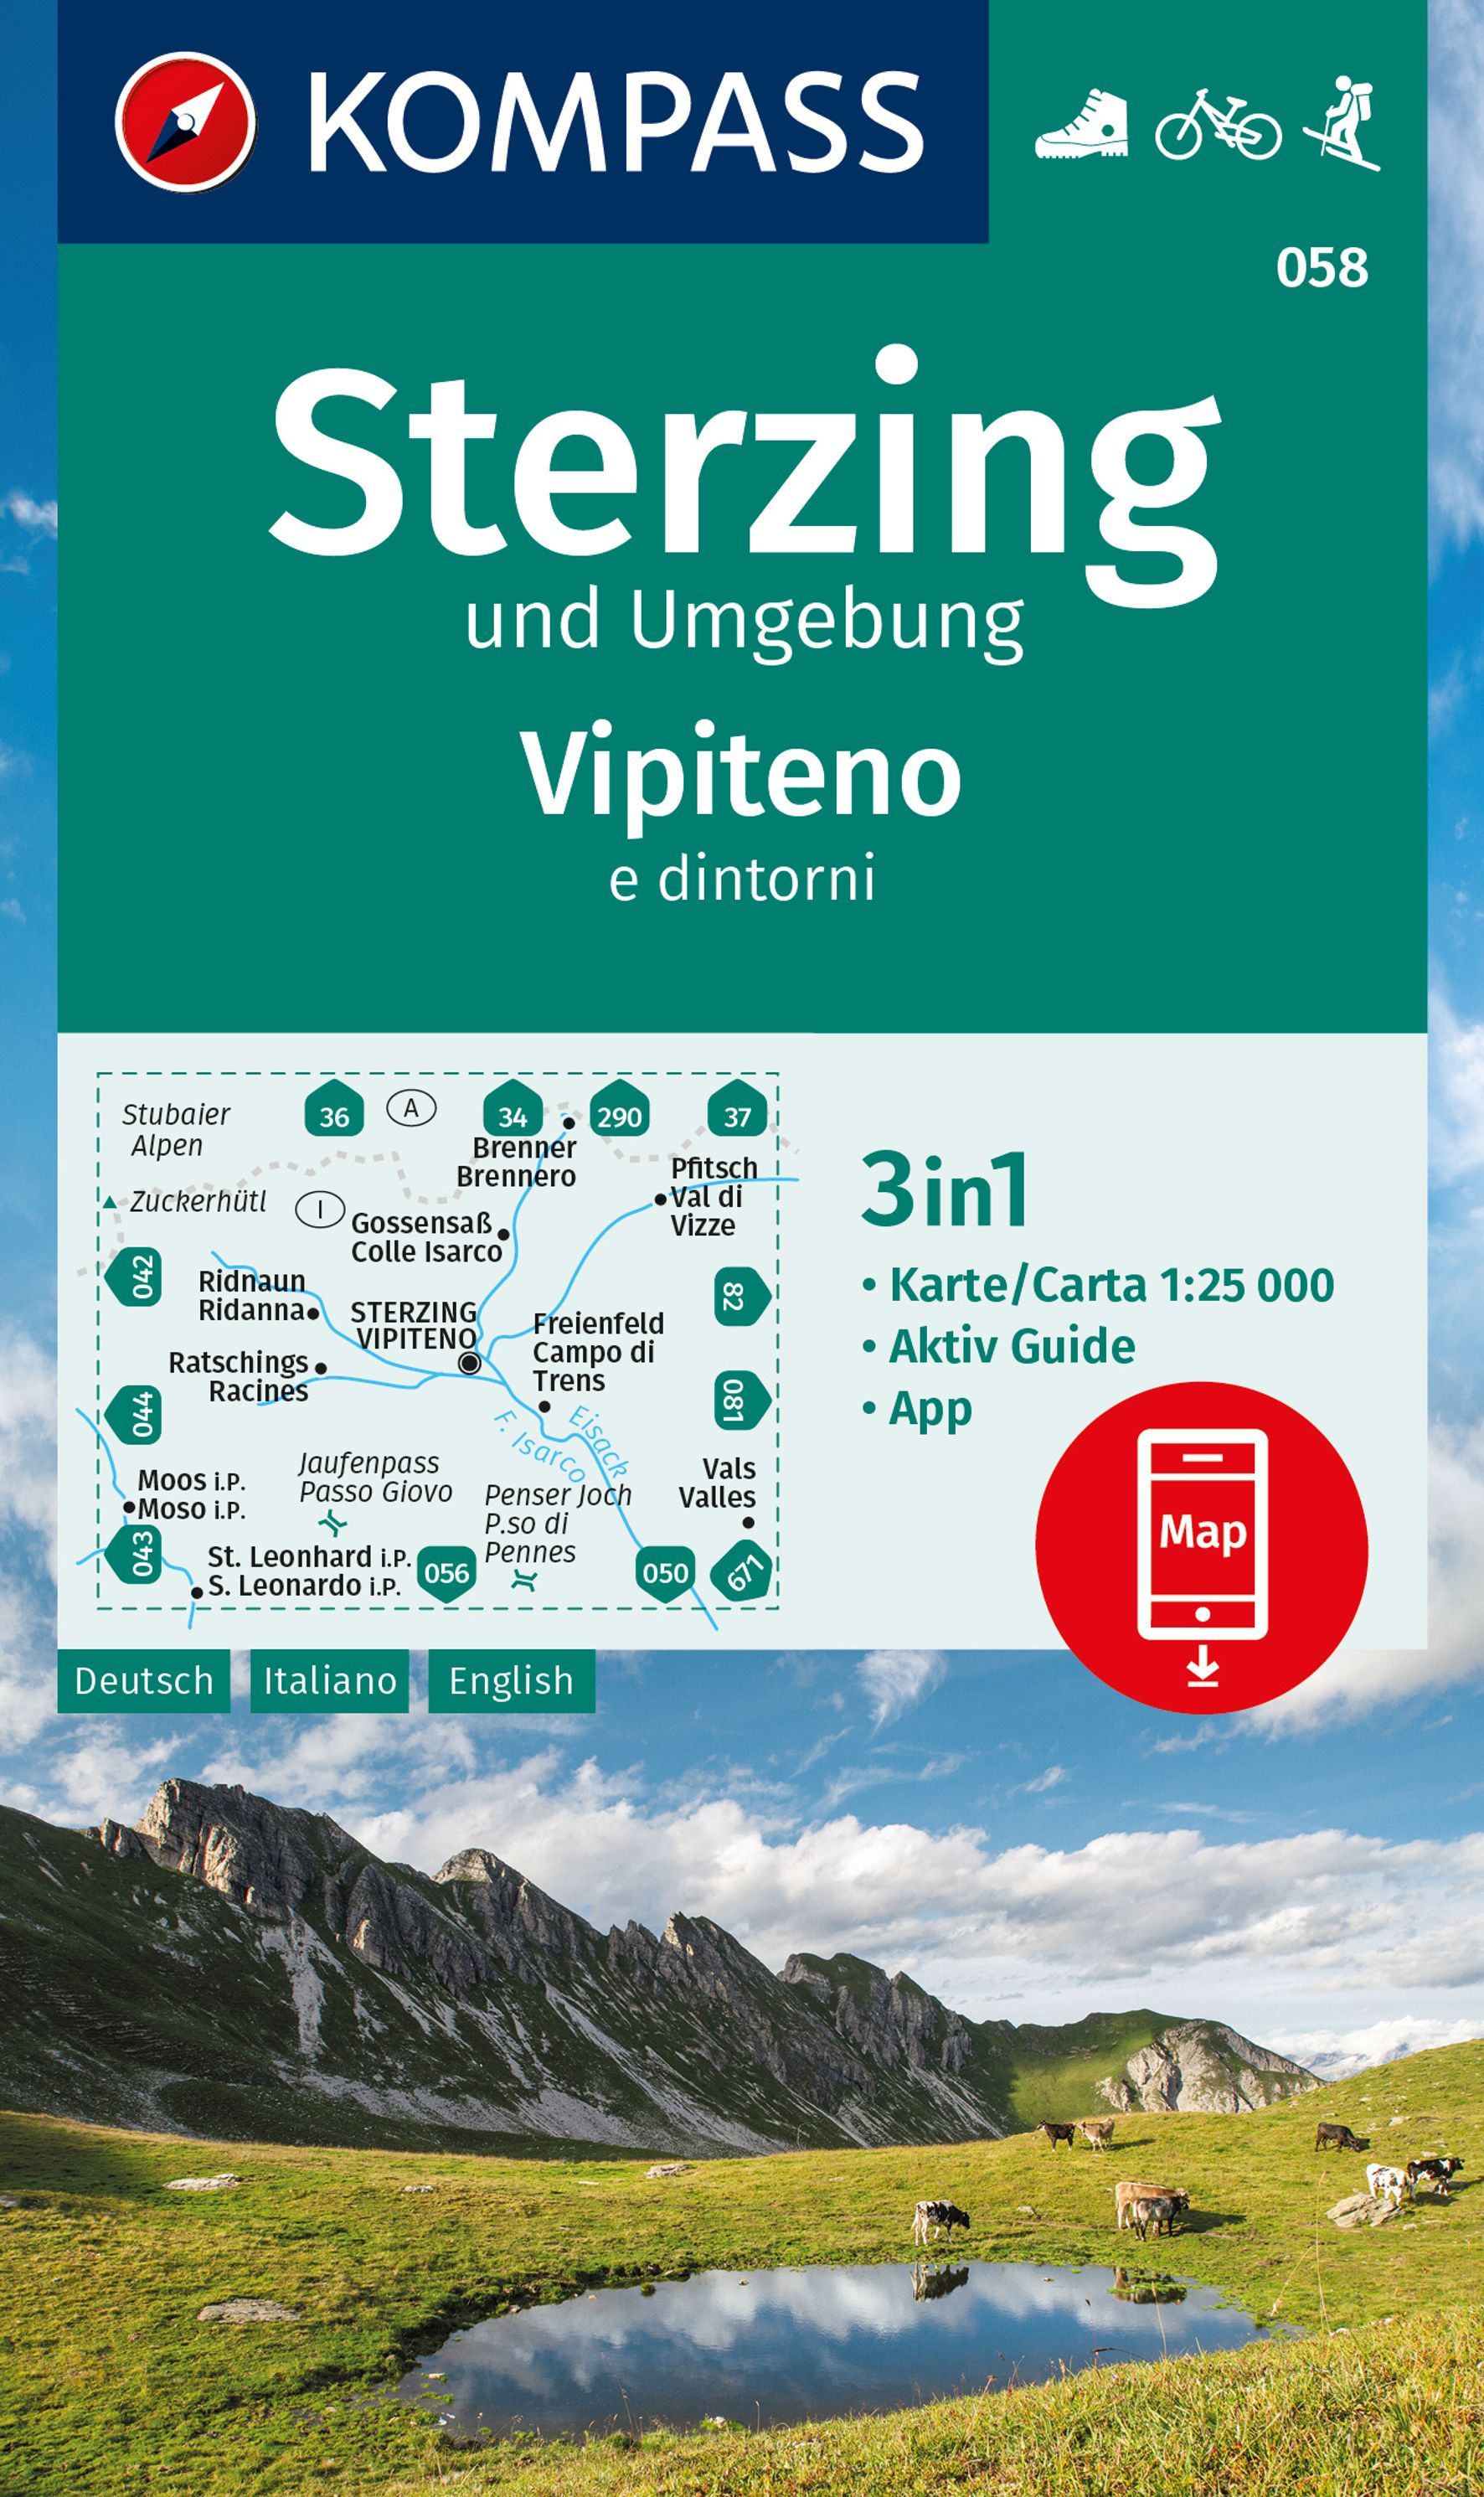 Online bestellen: Wandelkaart 058 Sterzing und Umgebung - Vipiteno e dintorni | Kompass